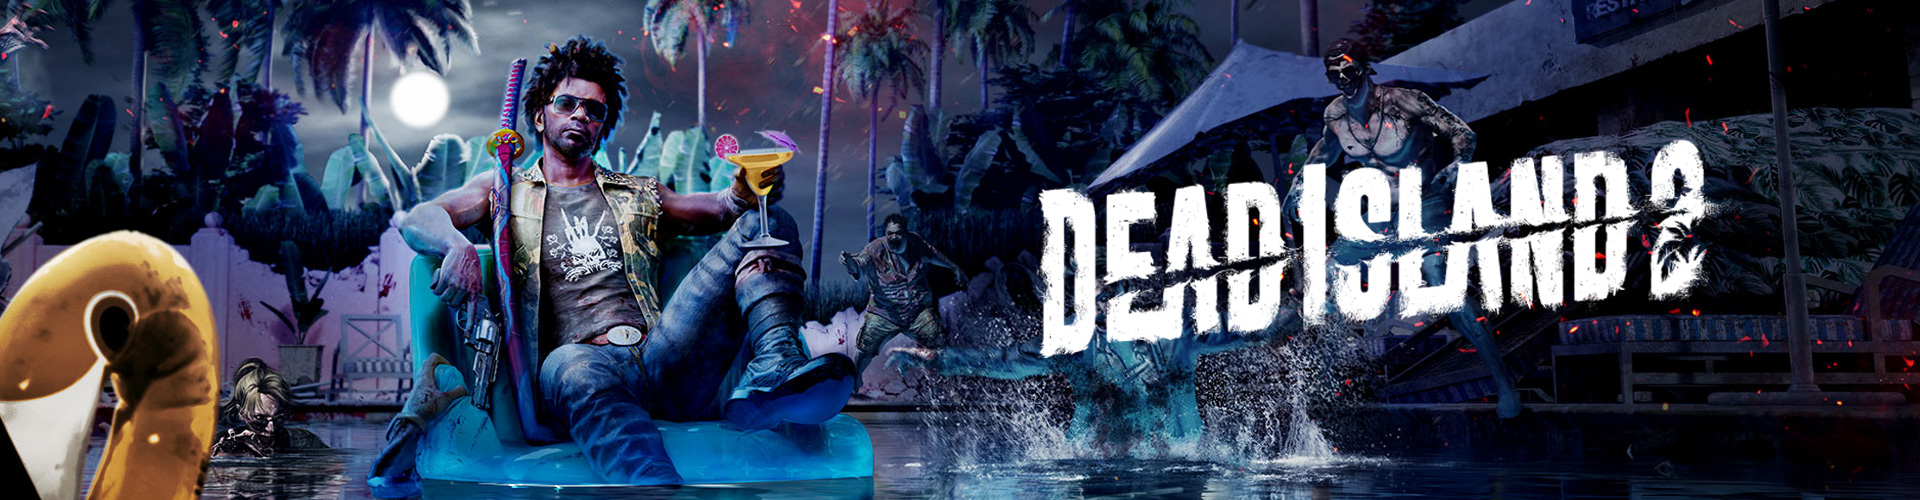 Dead Island 2: un juego de terror multijugador contra zombies